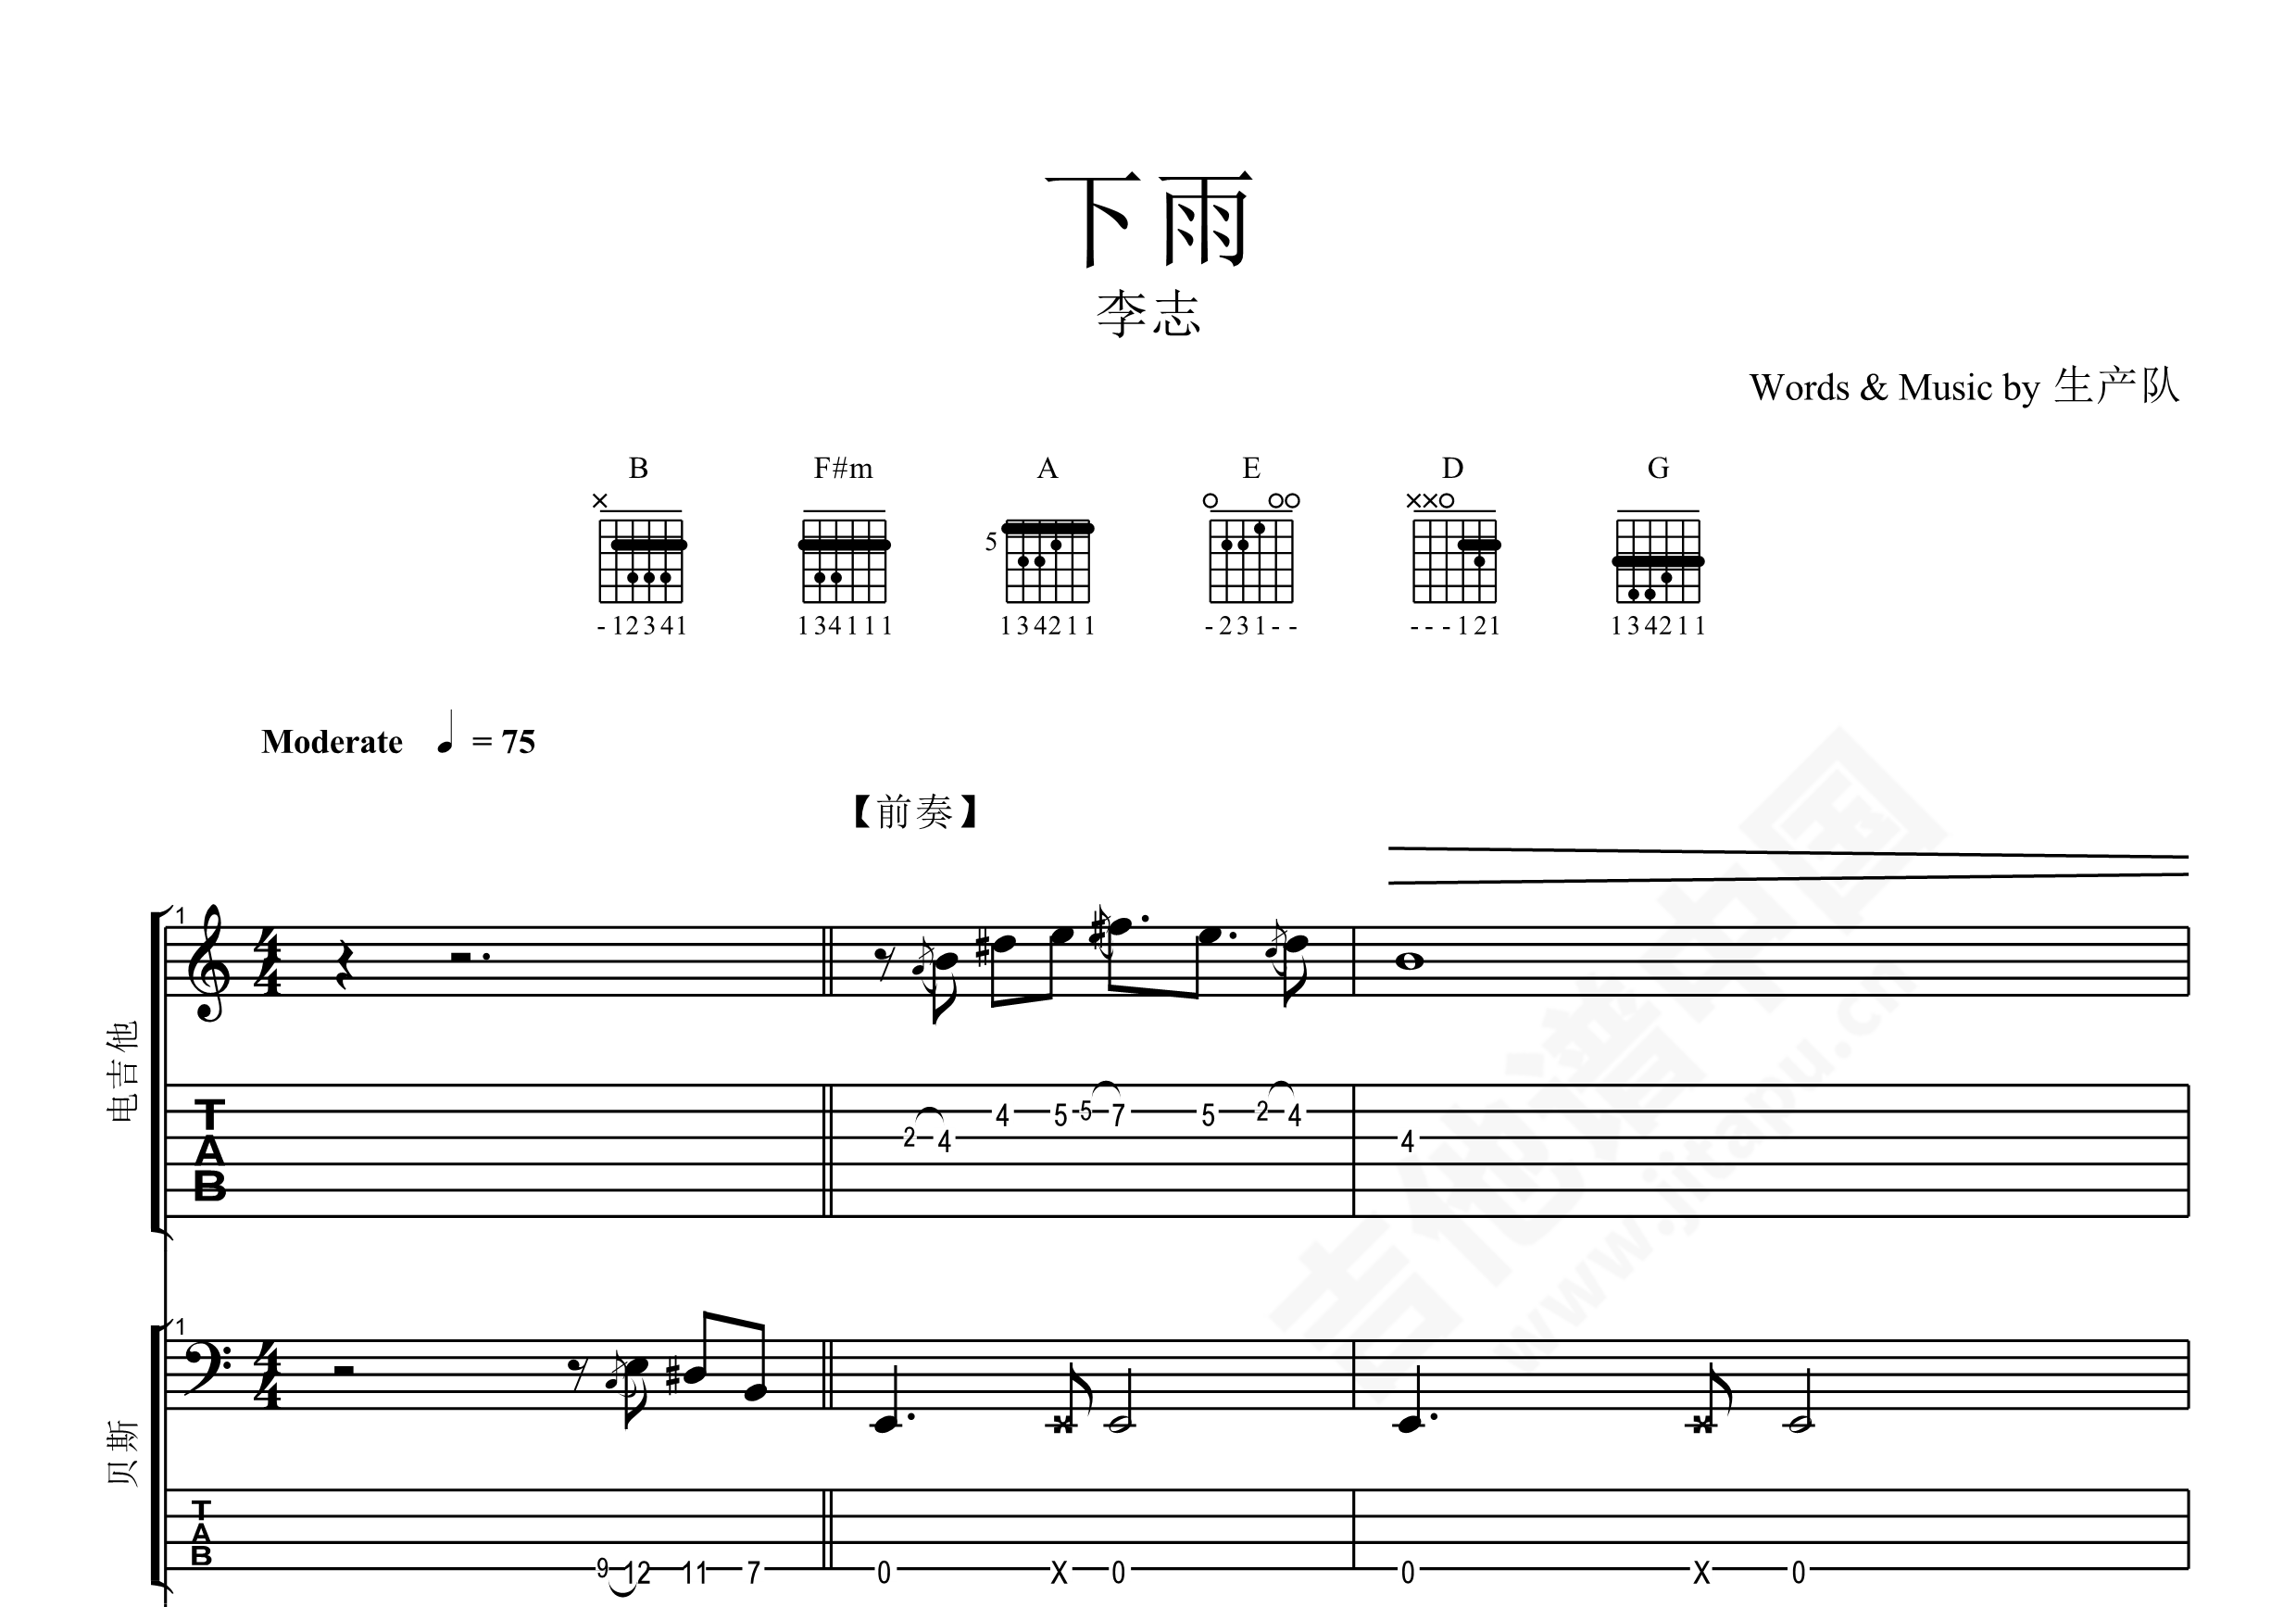 钢琴谱《听见下雨的声音》用简单数字版制谱 - 白痴弹法 - 单手双手钢琴谱 - 钢琴简谱